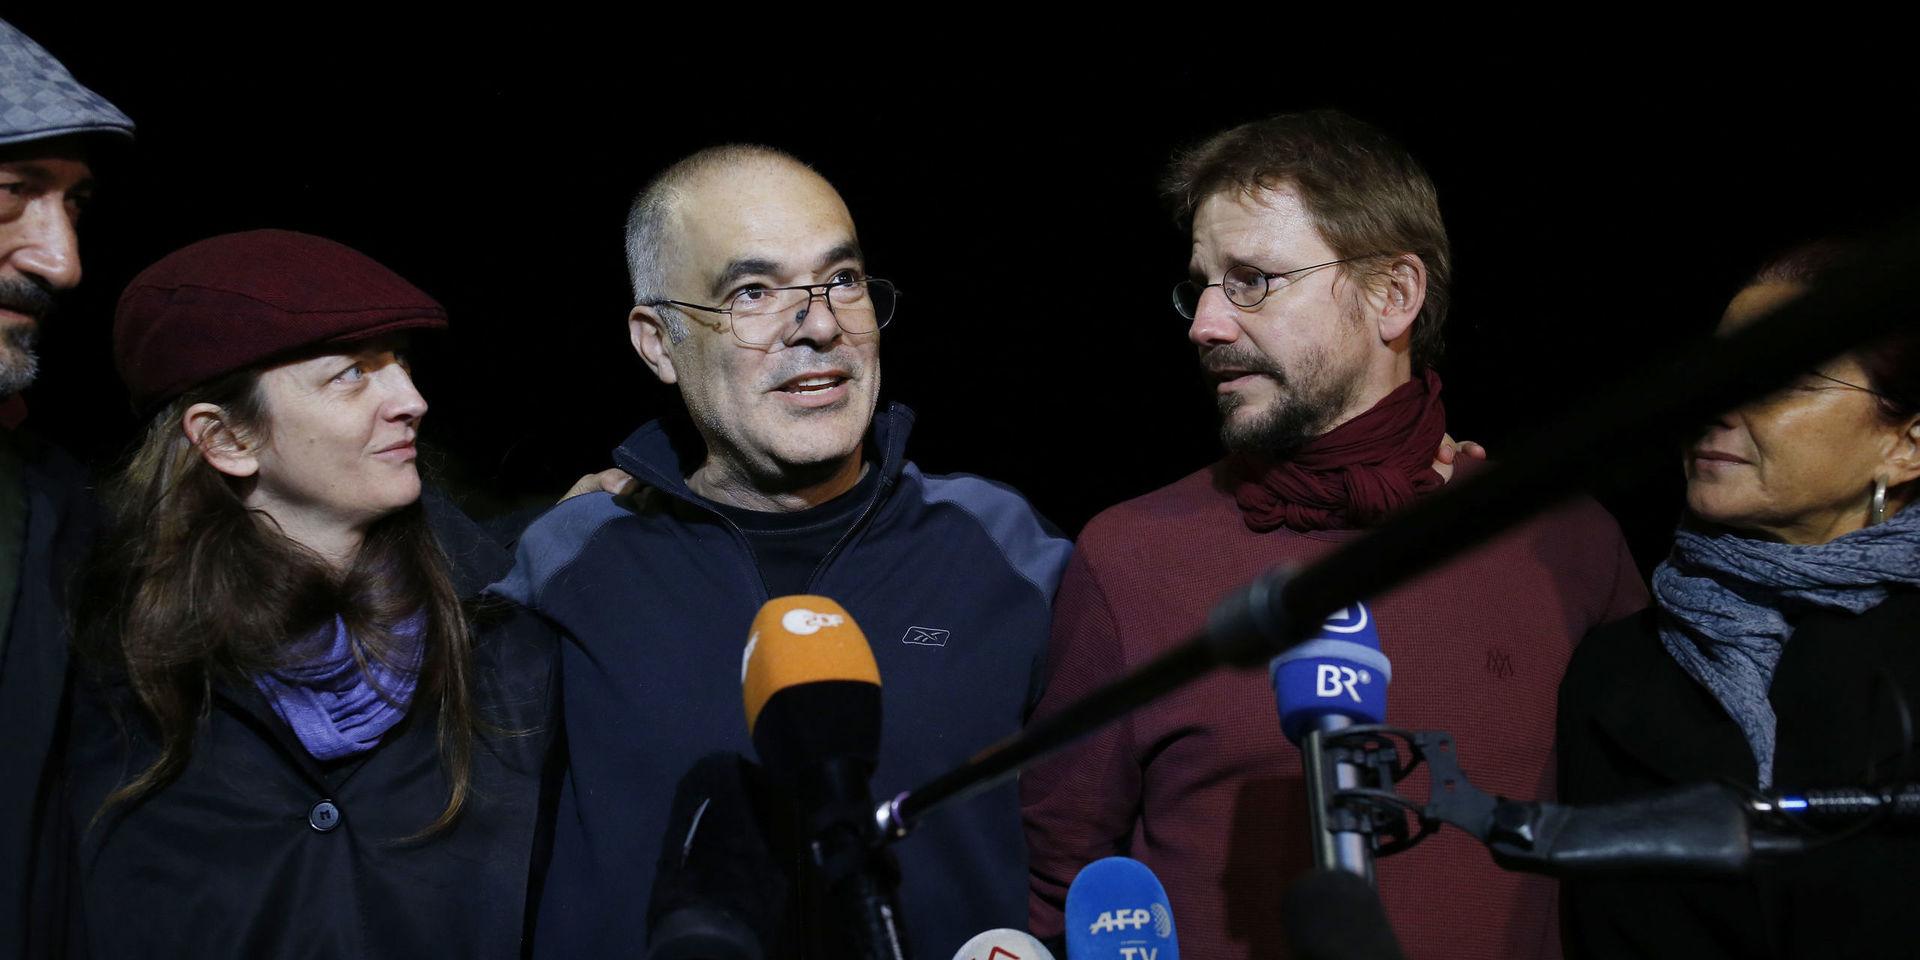 Svenske Ali Gharavi och tyske Peter Steudtner när de släpptes mot borgen efter fyra månader i häktet för två år sedan.